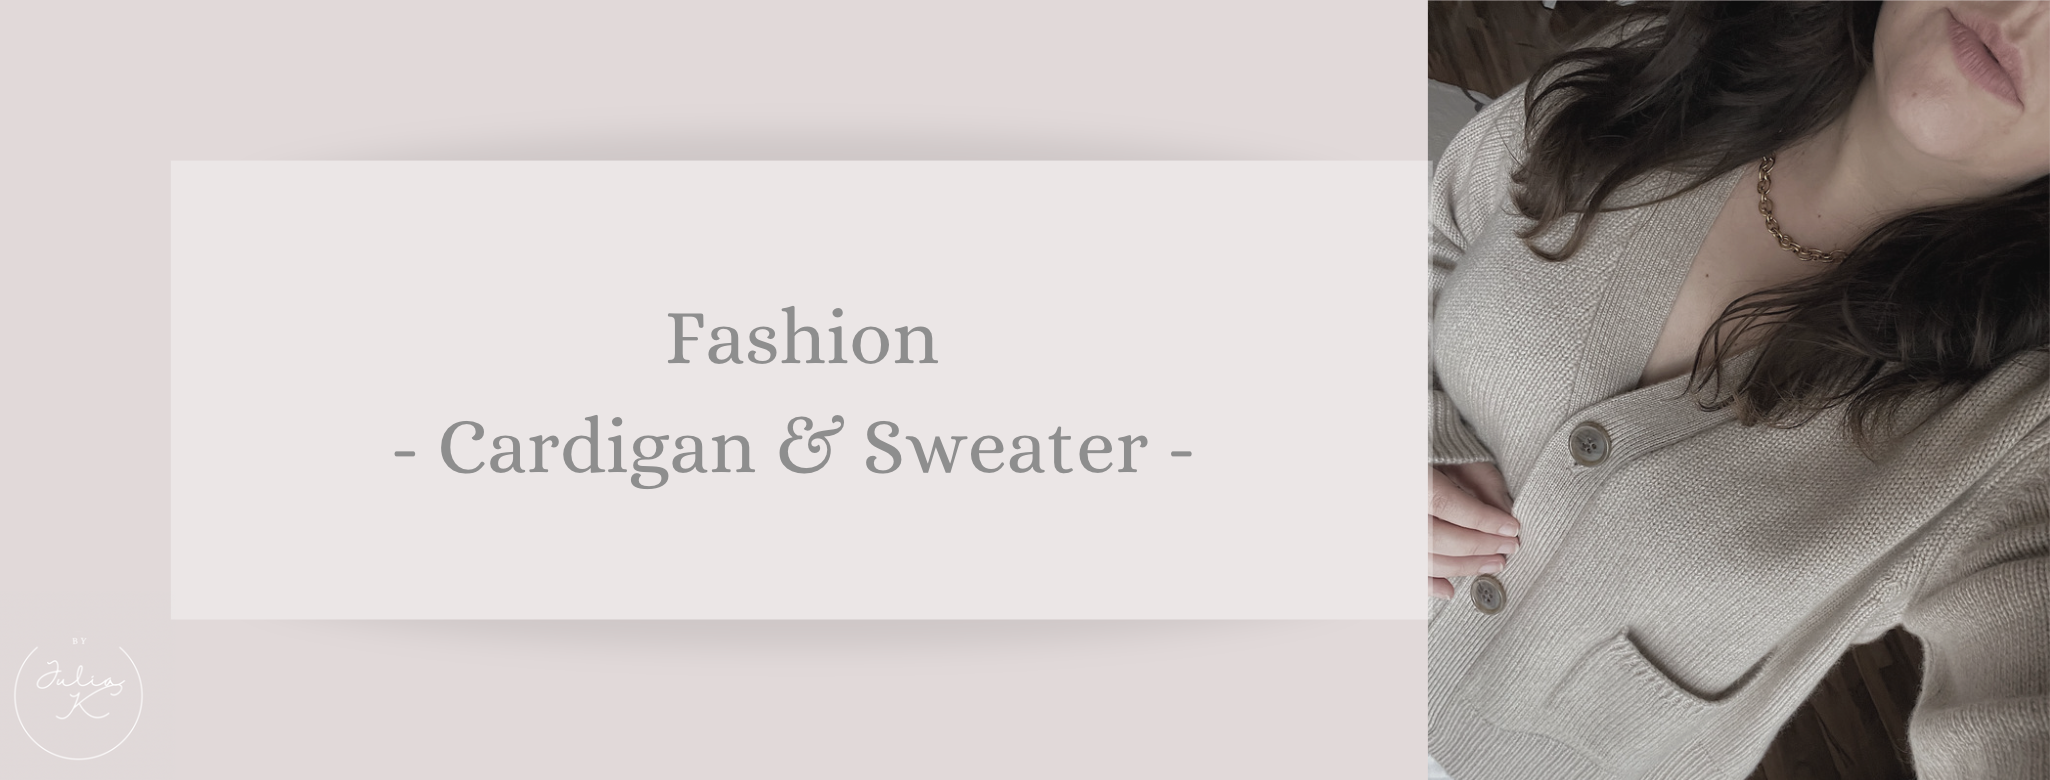 Fashion: Sweater & Cardigan